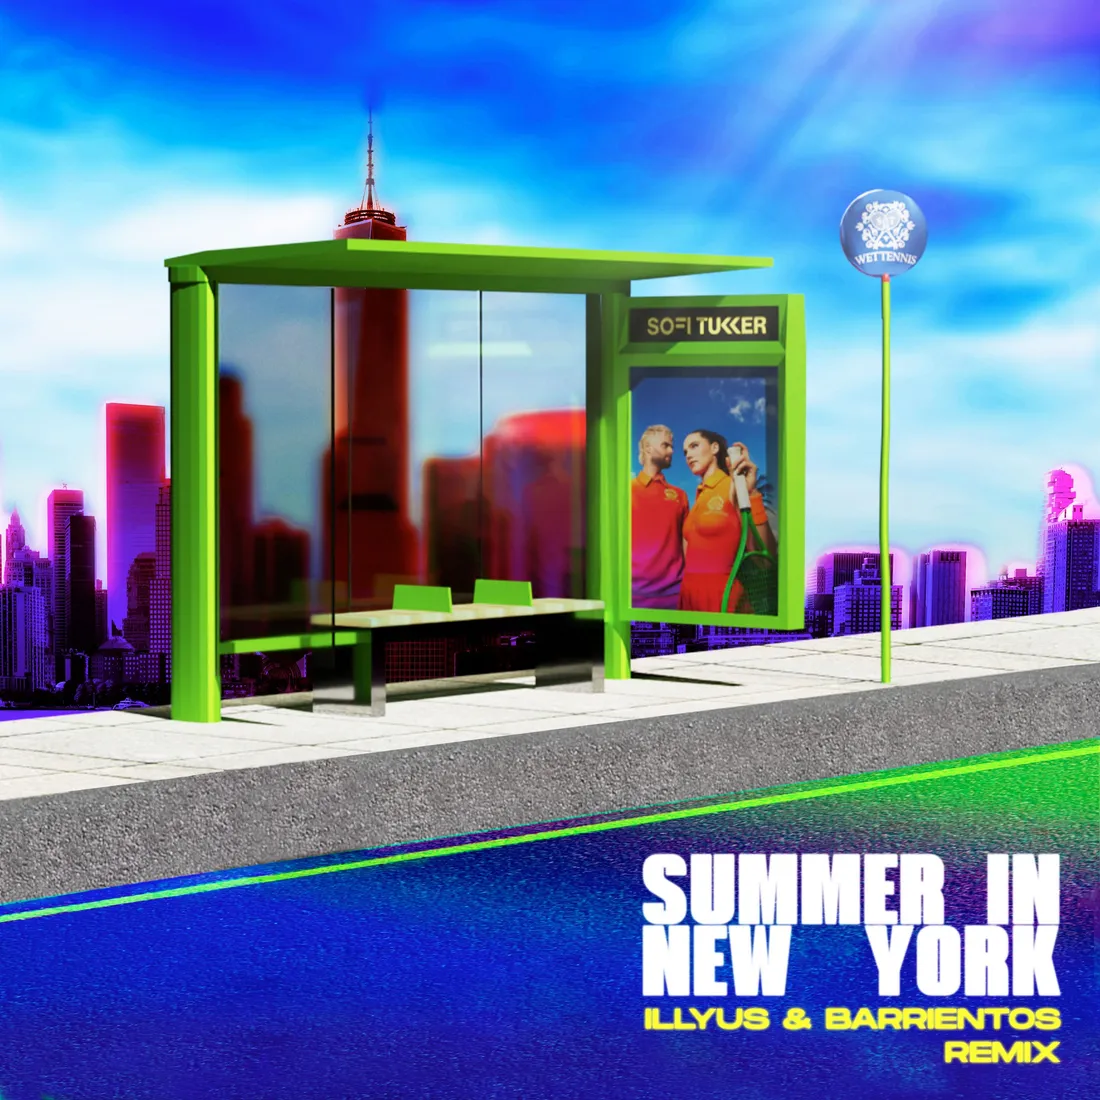 Sofi Tukker - Summer In New-York (Illyus & Barrientos remix)